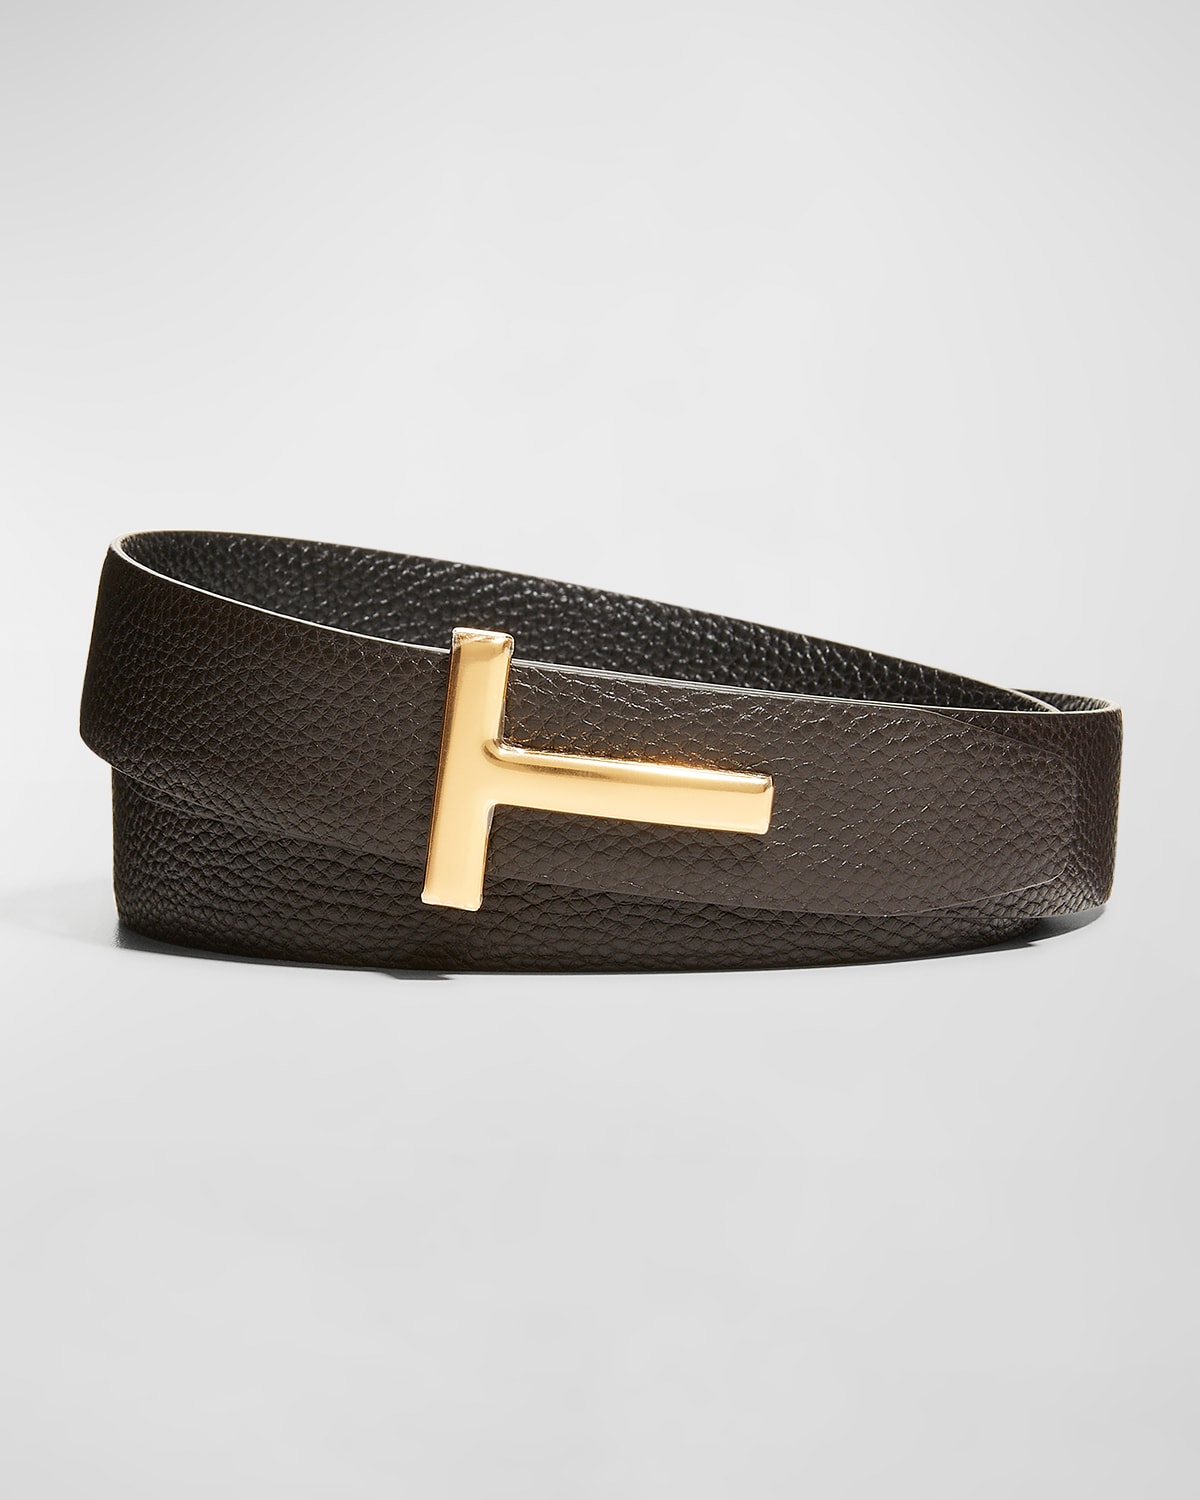 TOM FORD Belts for Men | ModeSens